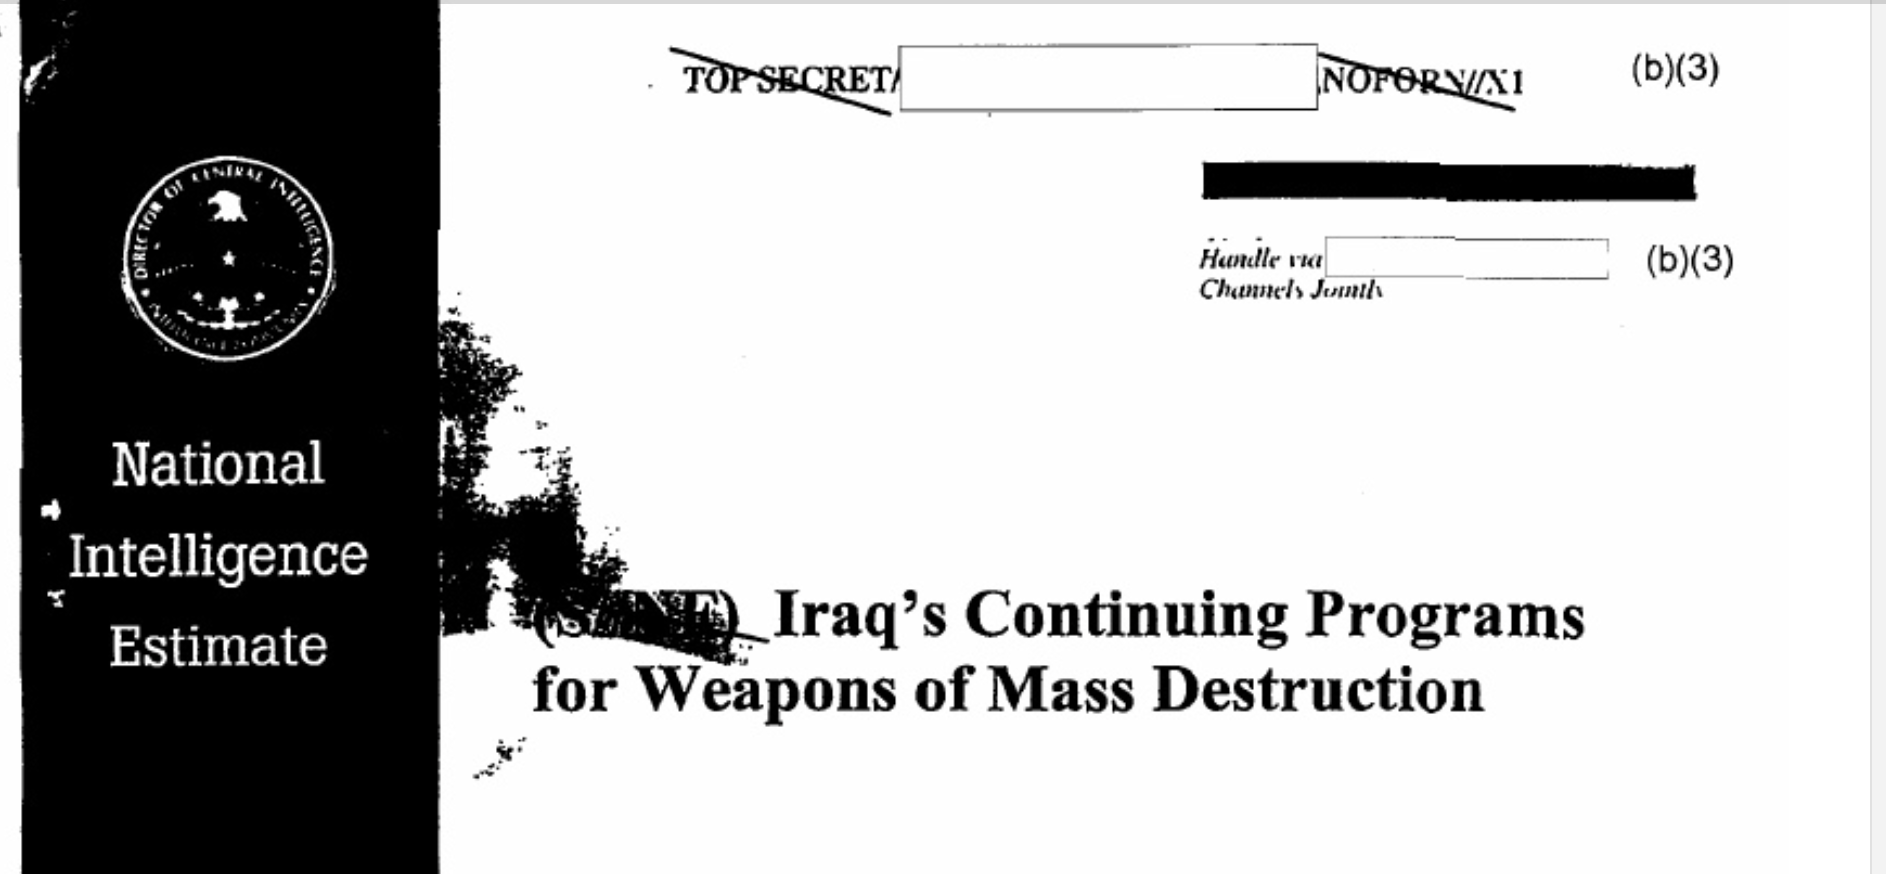 بازخوانی پرونده ای اطلاعاتی از جنگ عراق و قیاس با تنش های اخیر با ایران